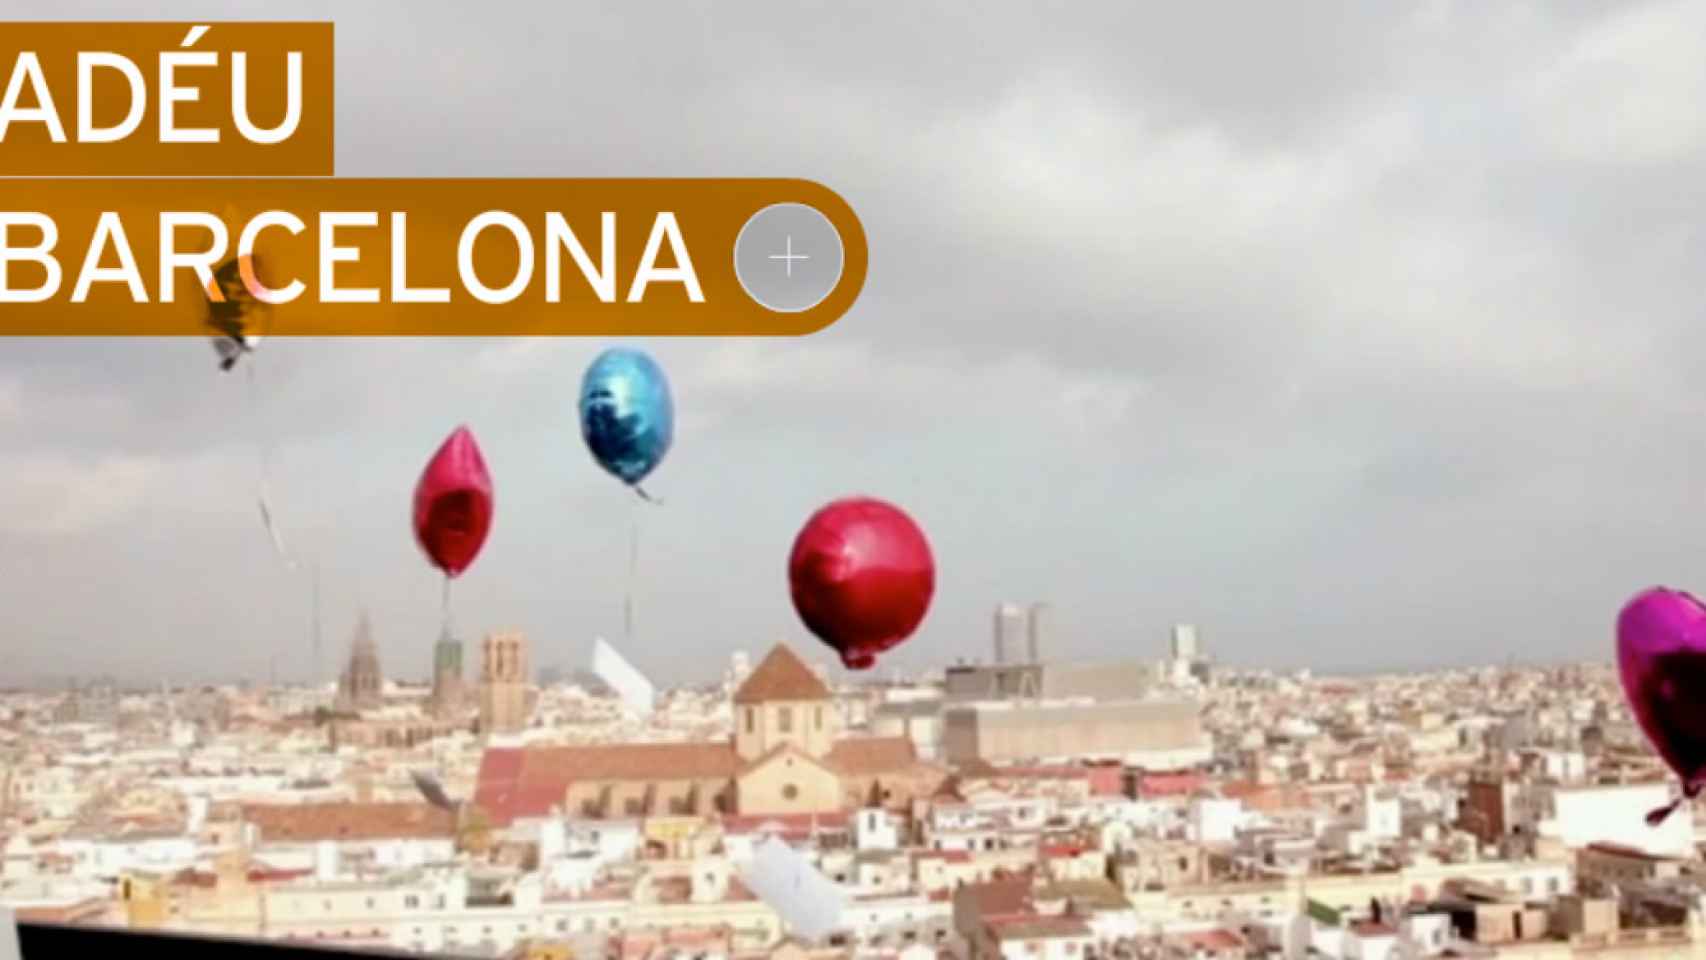 Adiós, Barcelona: hay barceloneses que ya no pueden permitirse vivir en su ciudad  / DoubleYou